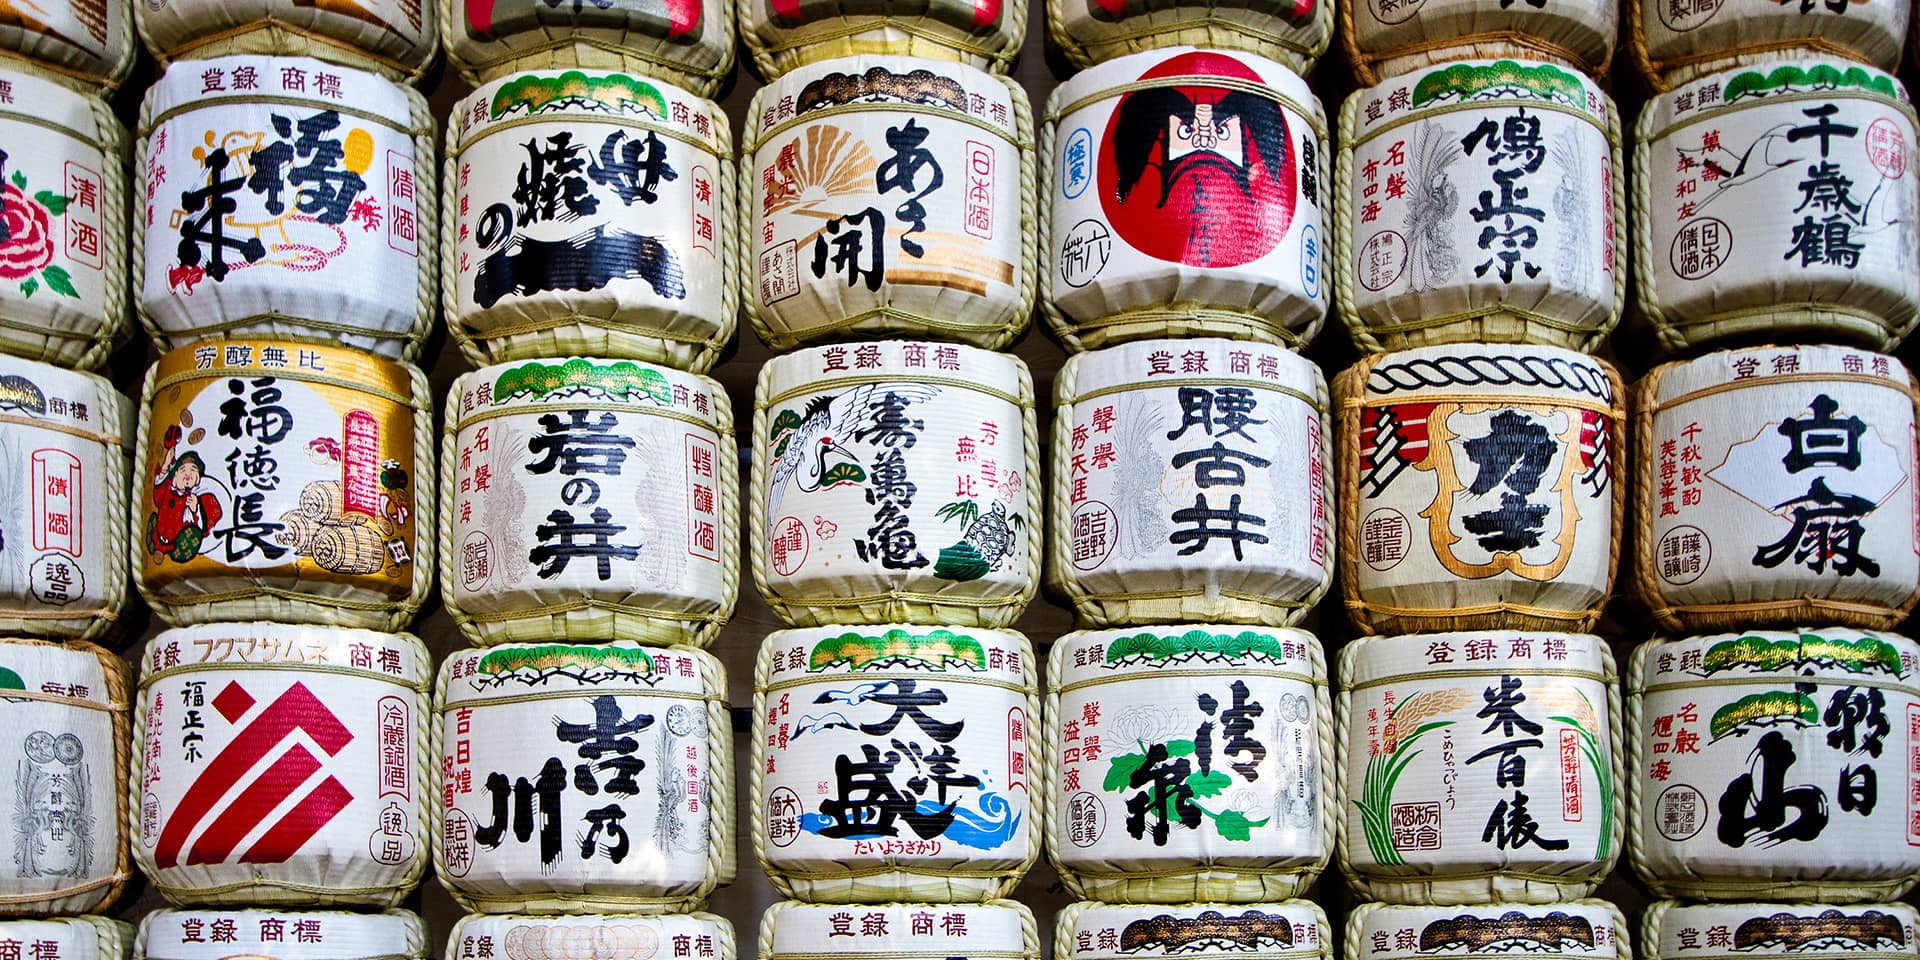 Billede af japansk dekorerede dåser